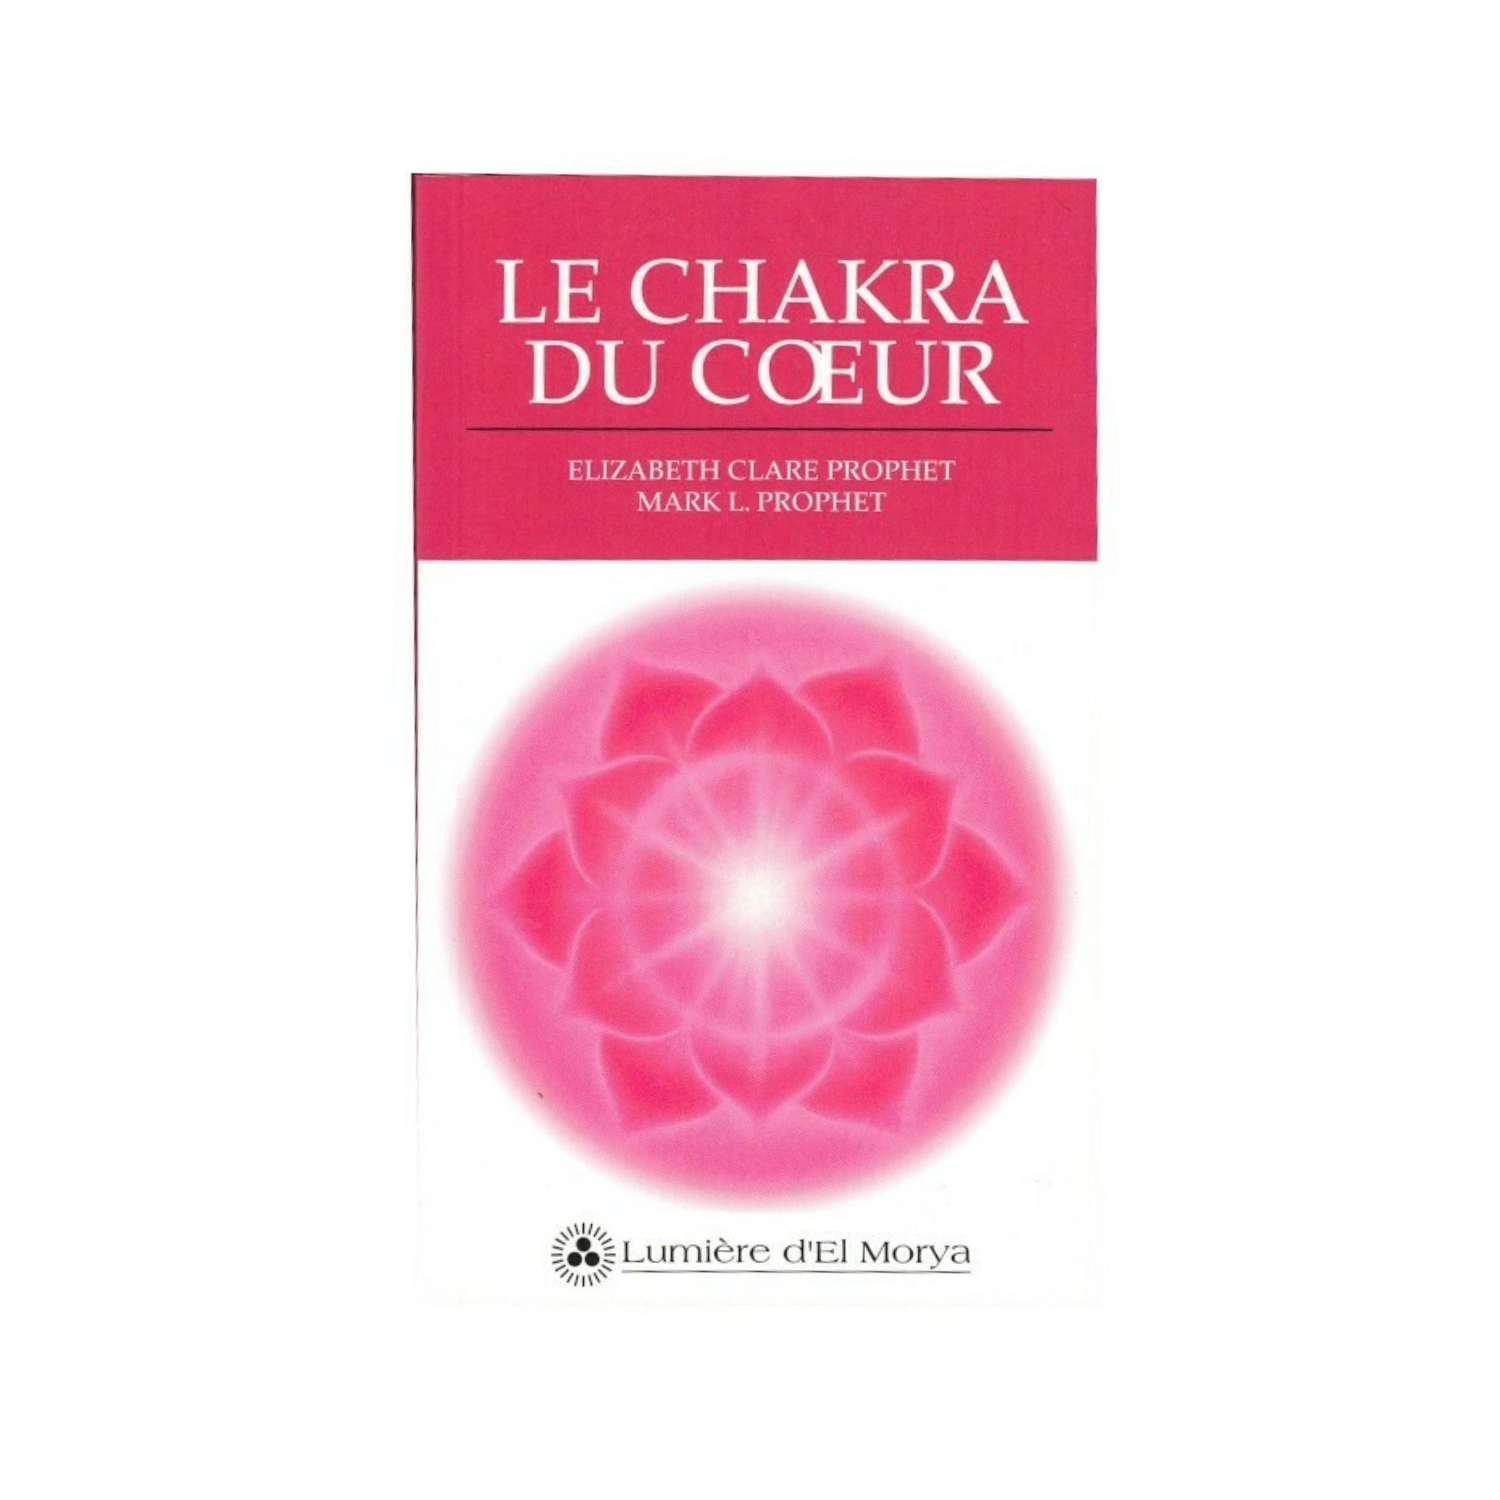 Le chakra du cœur